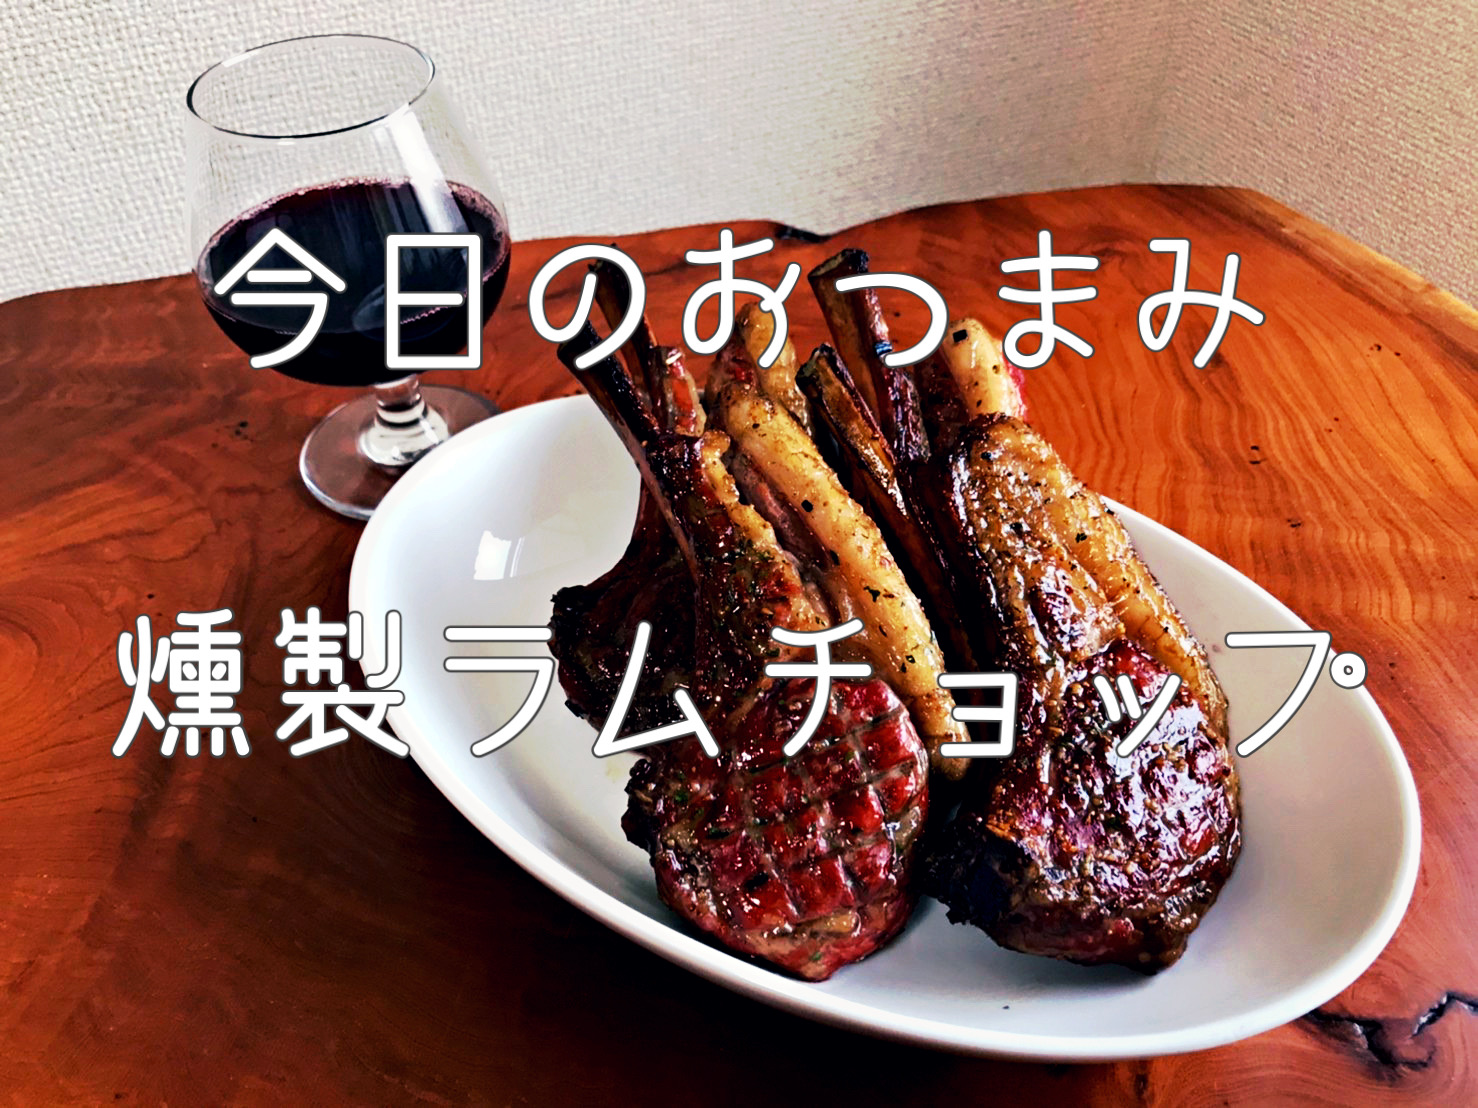 家飲み用燻製レシピ。〜燻製ラムチョップ編〜【簡単おつまみ#6】